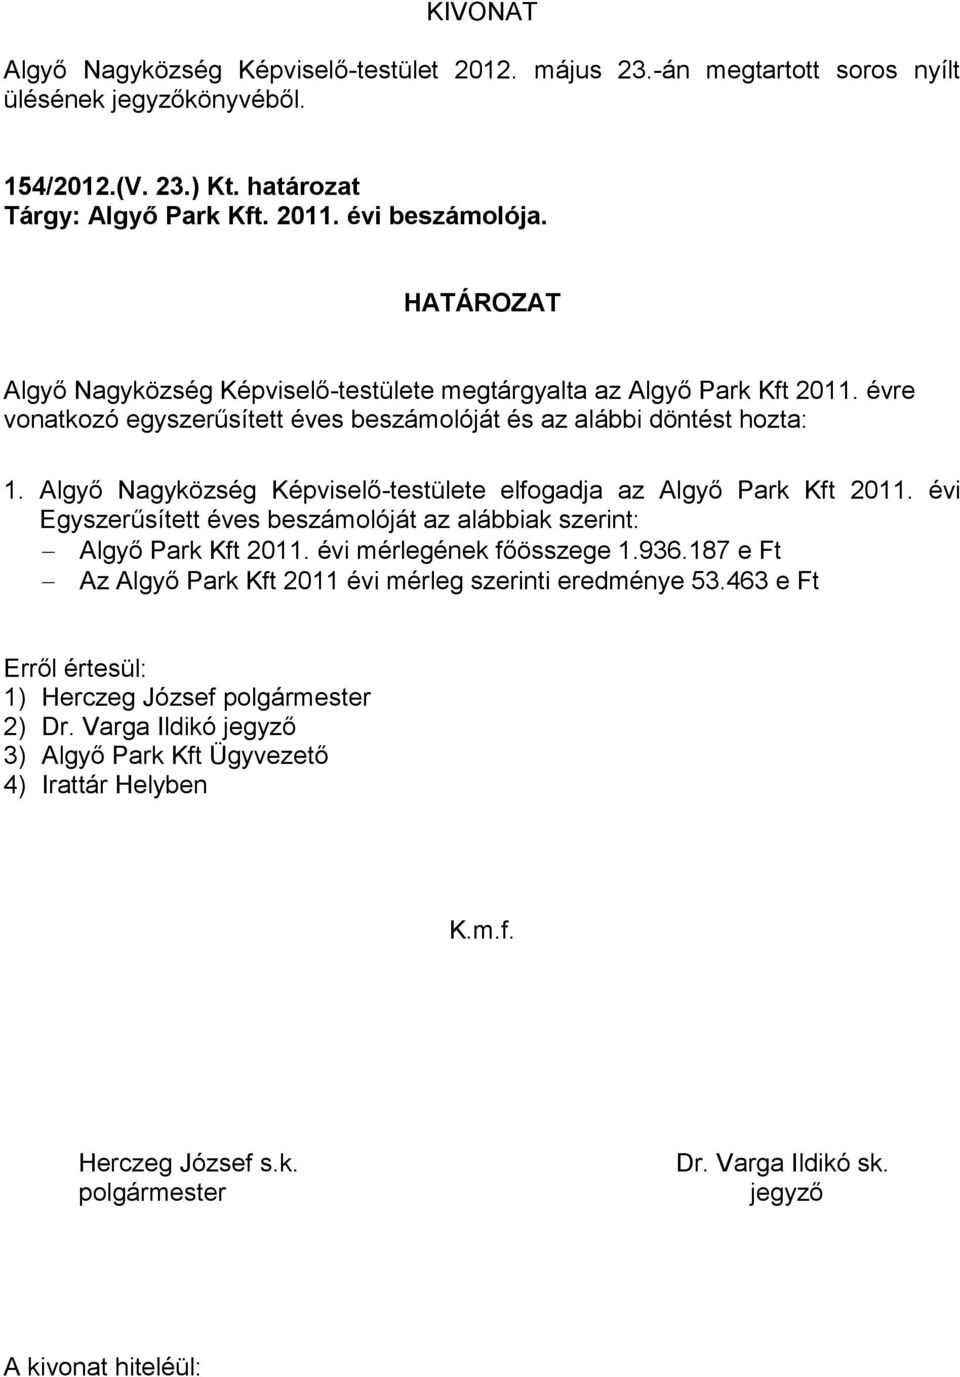 Algyő Nagyközség Képviselő-testülete elfogadja az Algyő Park Kft 2011. évi Egyszerűsített éves beszámolóját az alábbiak szerint: Algyő Park Kft 2011.